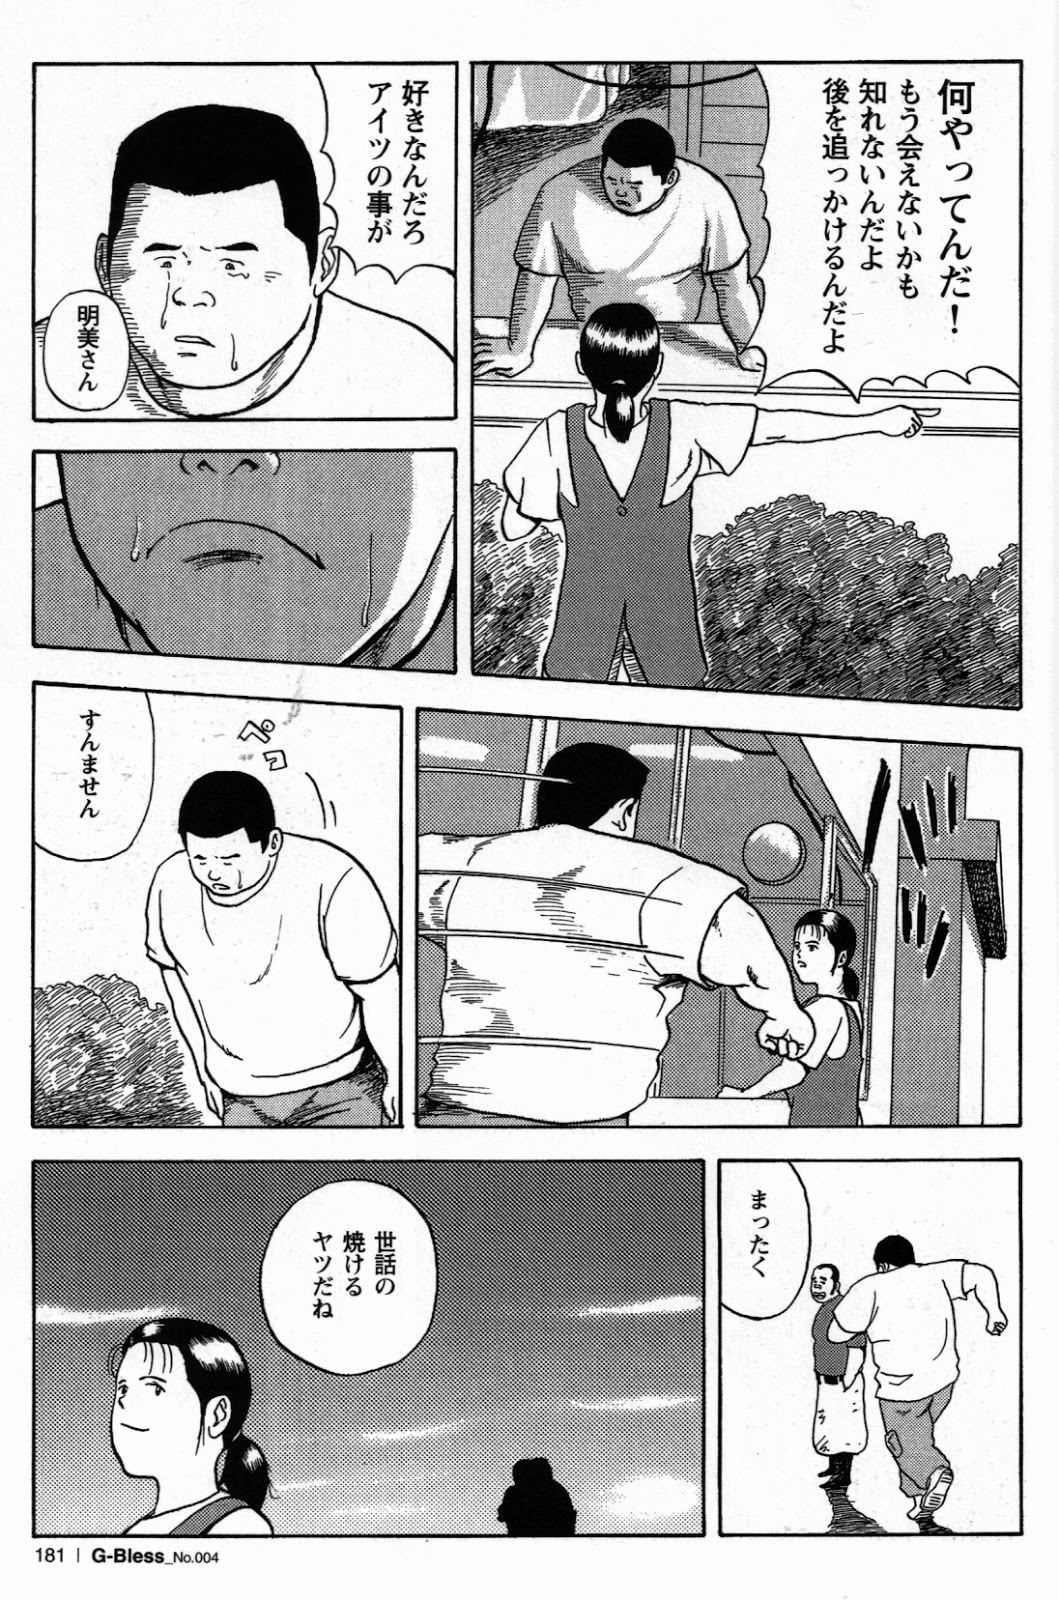 [Tatsumi Daigo, Yoshihiko Takeo] Sentakuya Bugi (GBless Vol.04) page 11 full